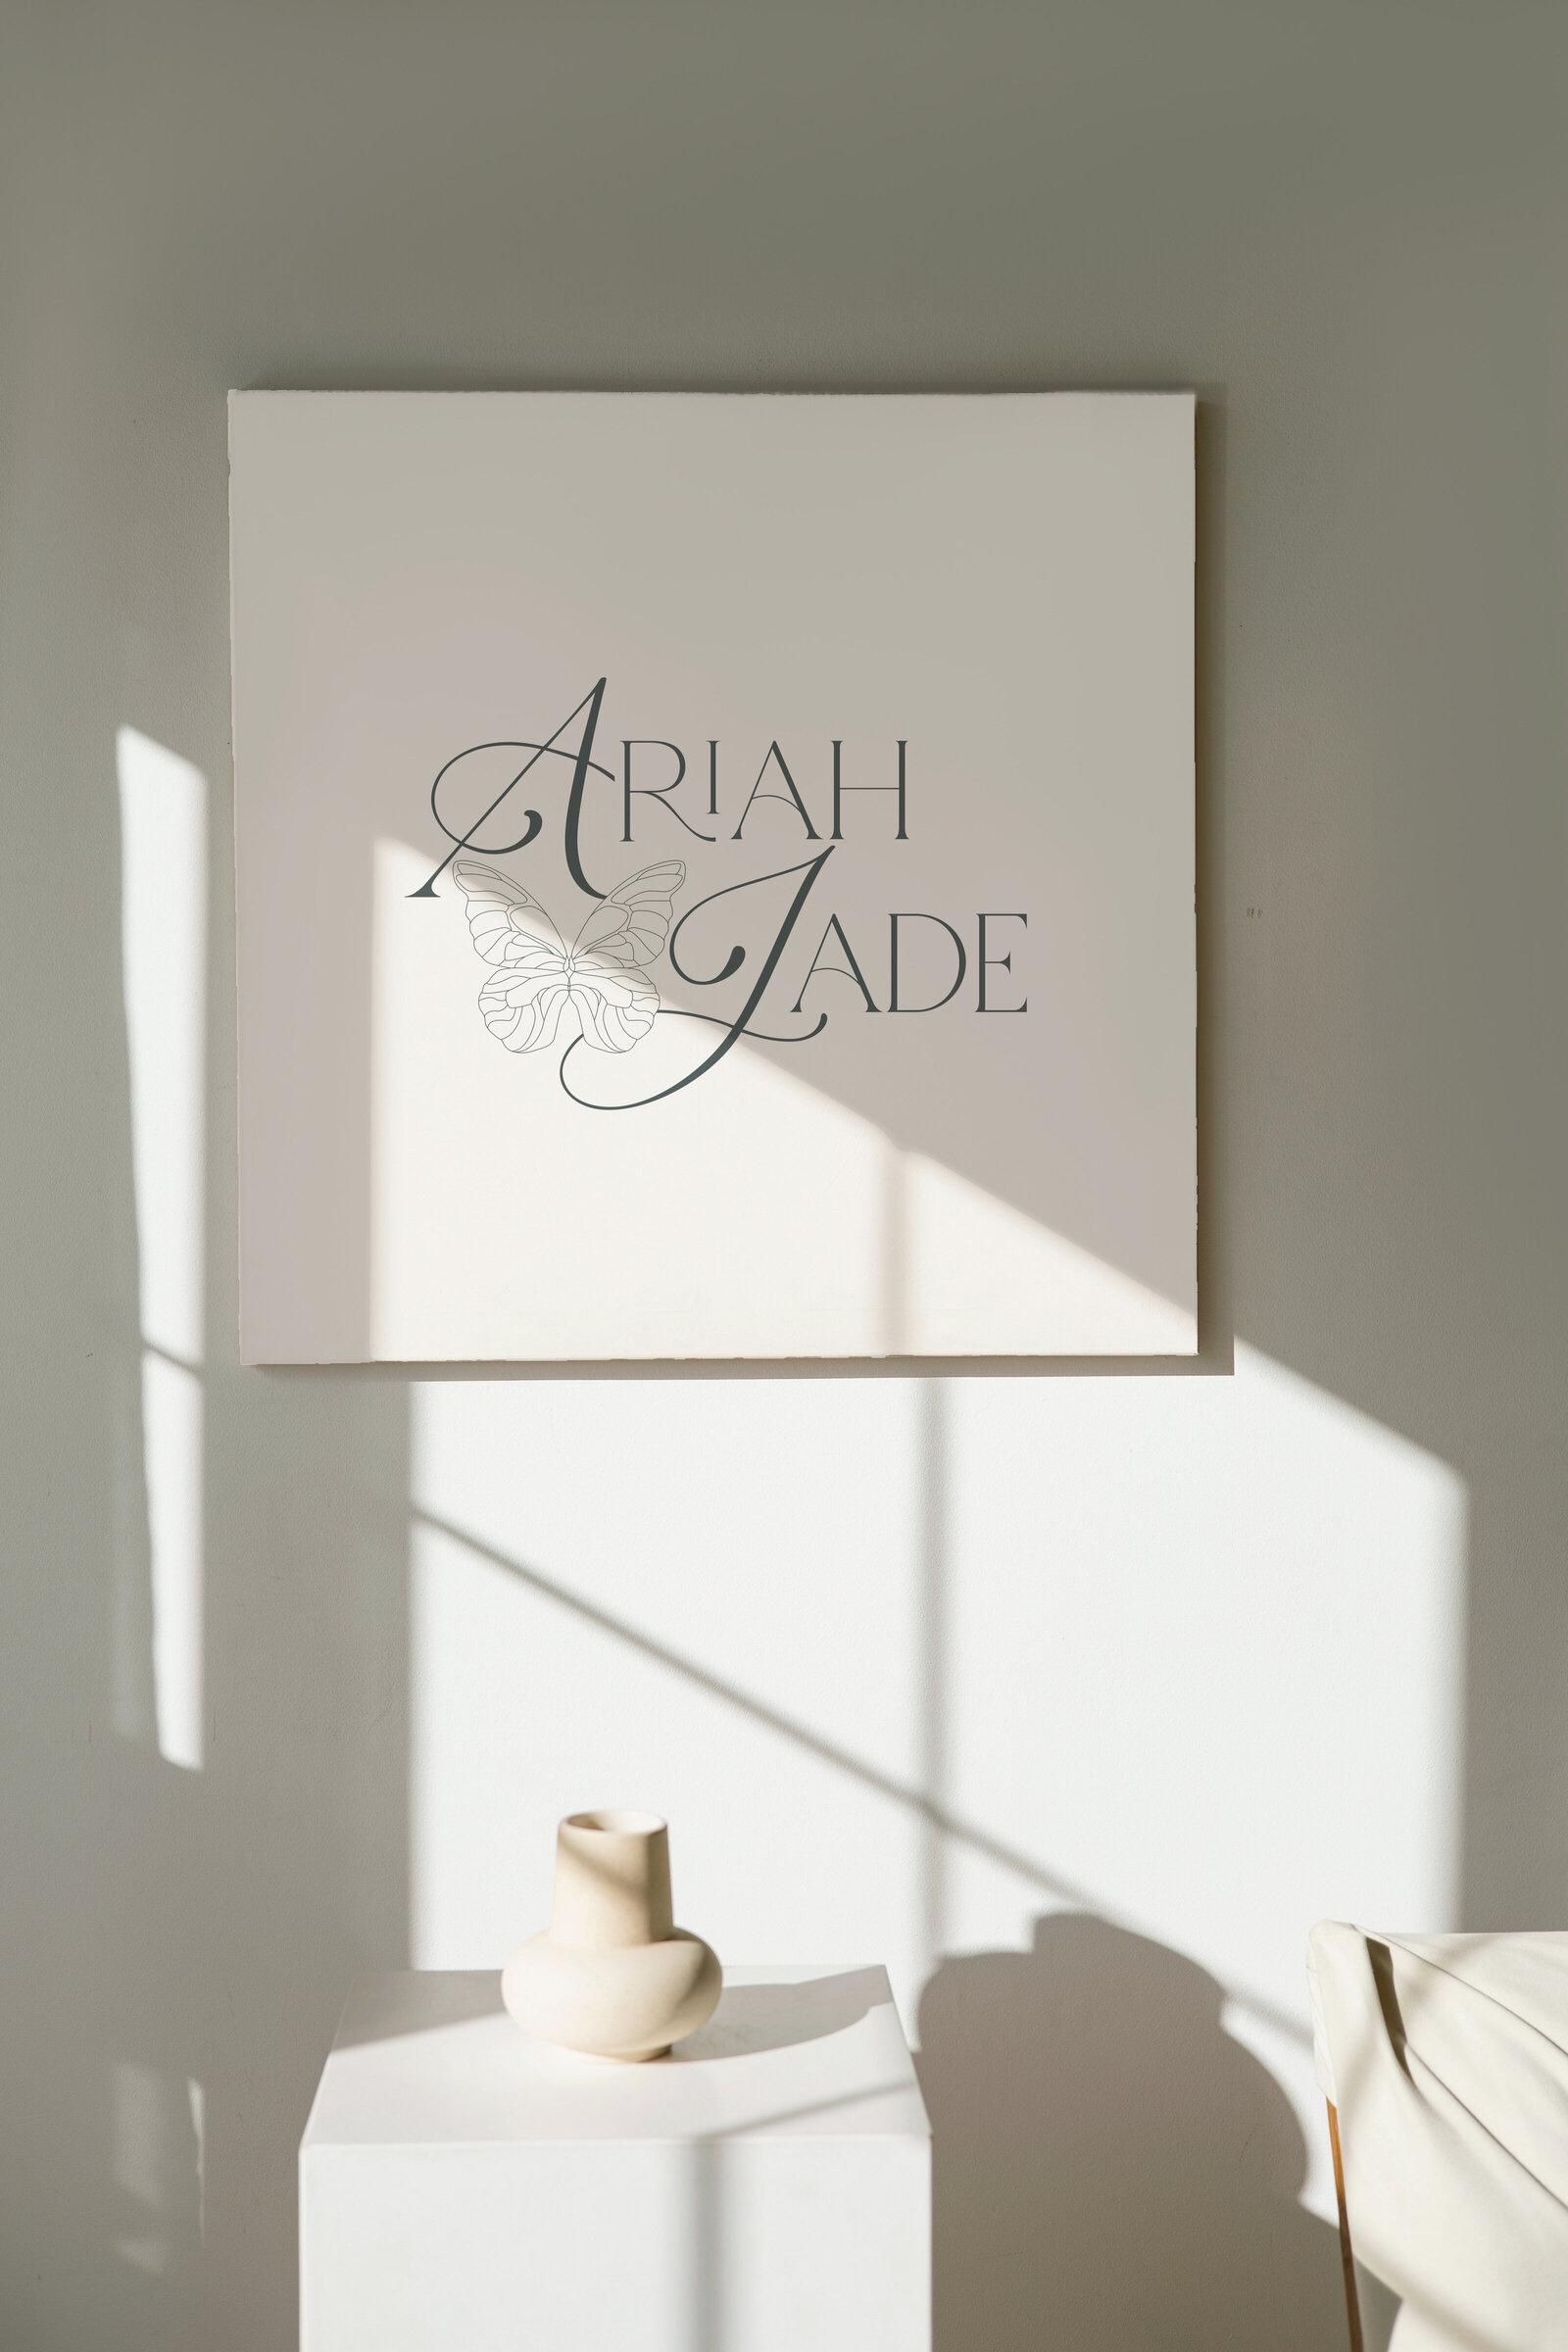 Ariah Jade Branding by our design agency in Fort Wayne, IN